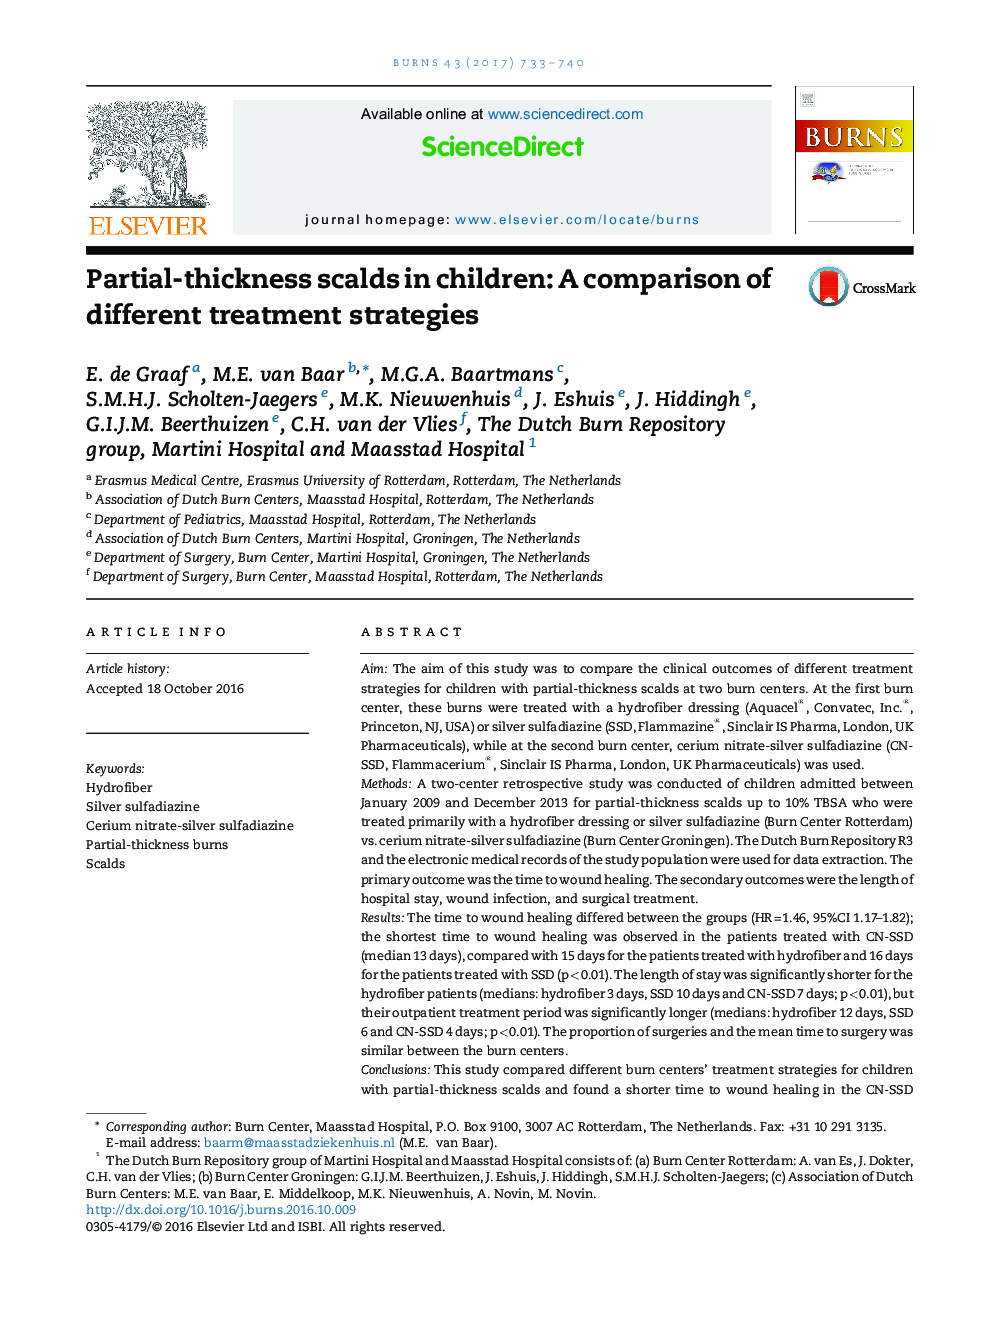 سوختگی با ضخامت نسبی با آب جوش در کودکان: مقایسه استراتژی های درمانی مختلف